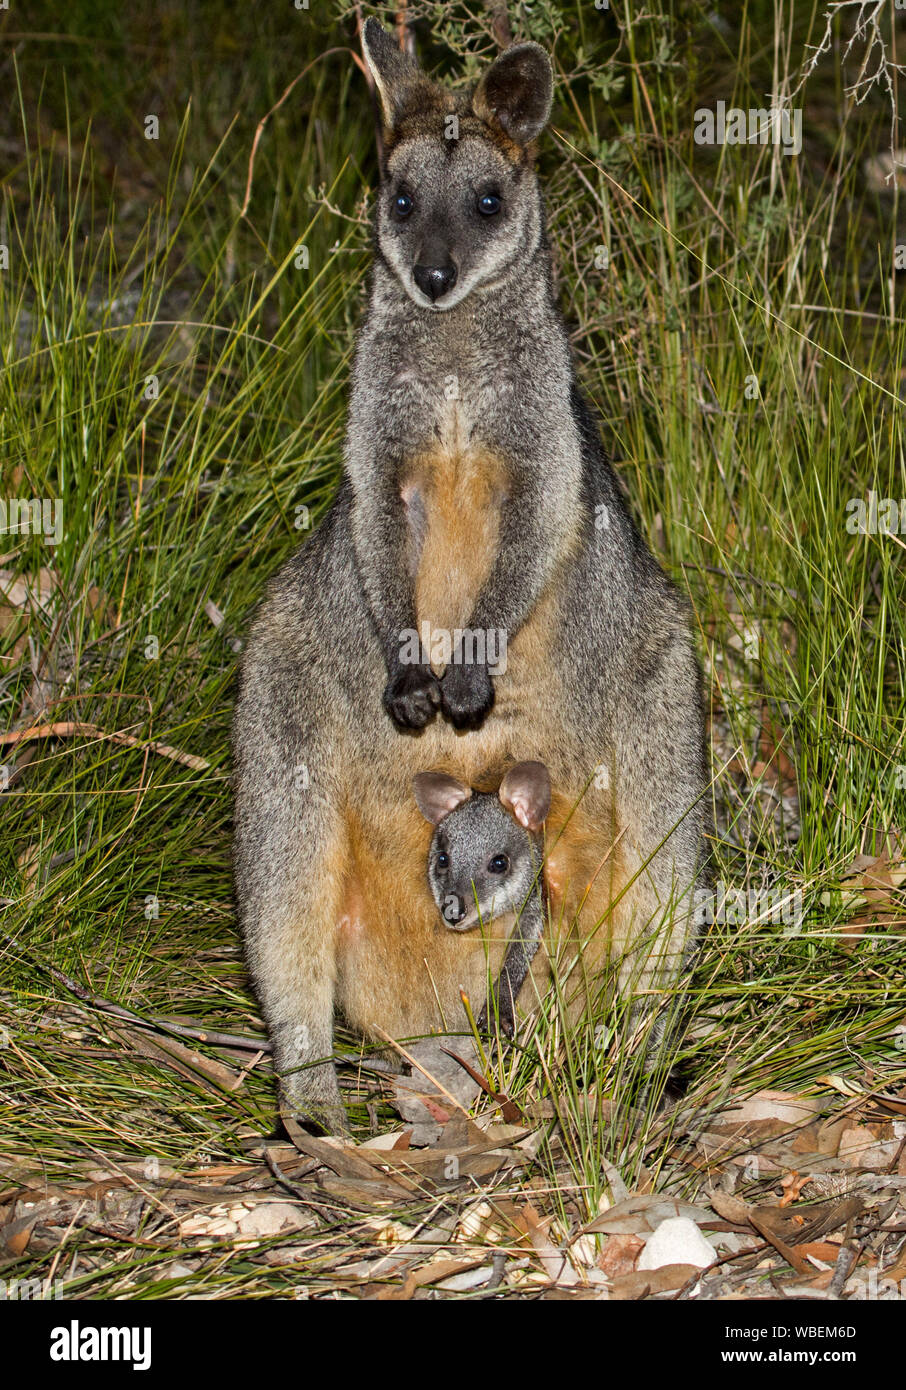 Bella palude wallaby, Wallabia bicolor, con joey il peering dalla custodia, sia fissando la fotocamera da tra alte erbe, nel selvaggio in Australia Foto Stock